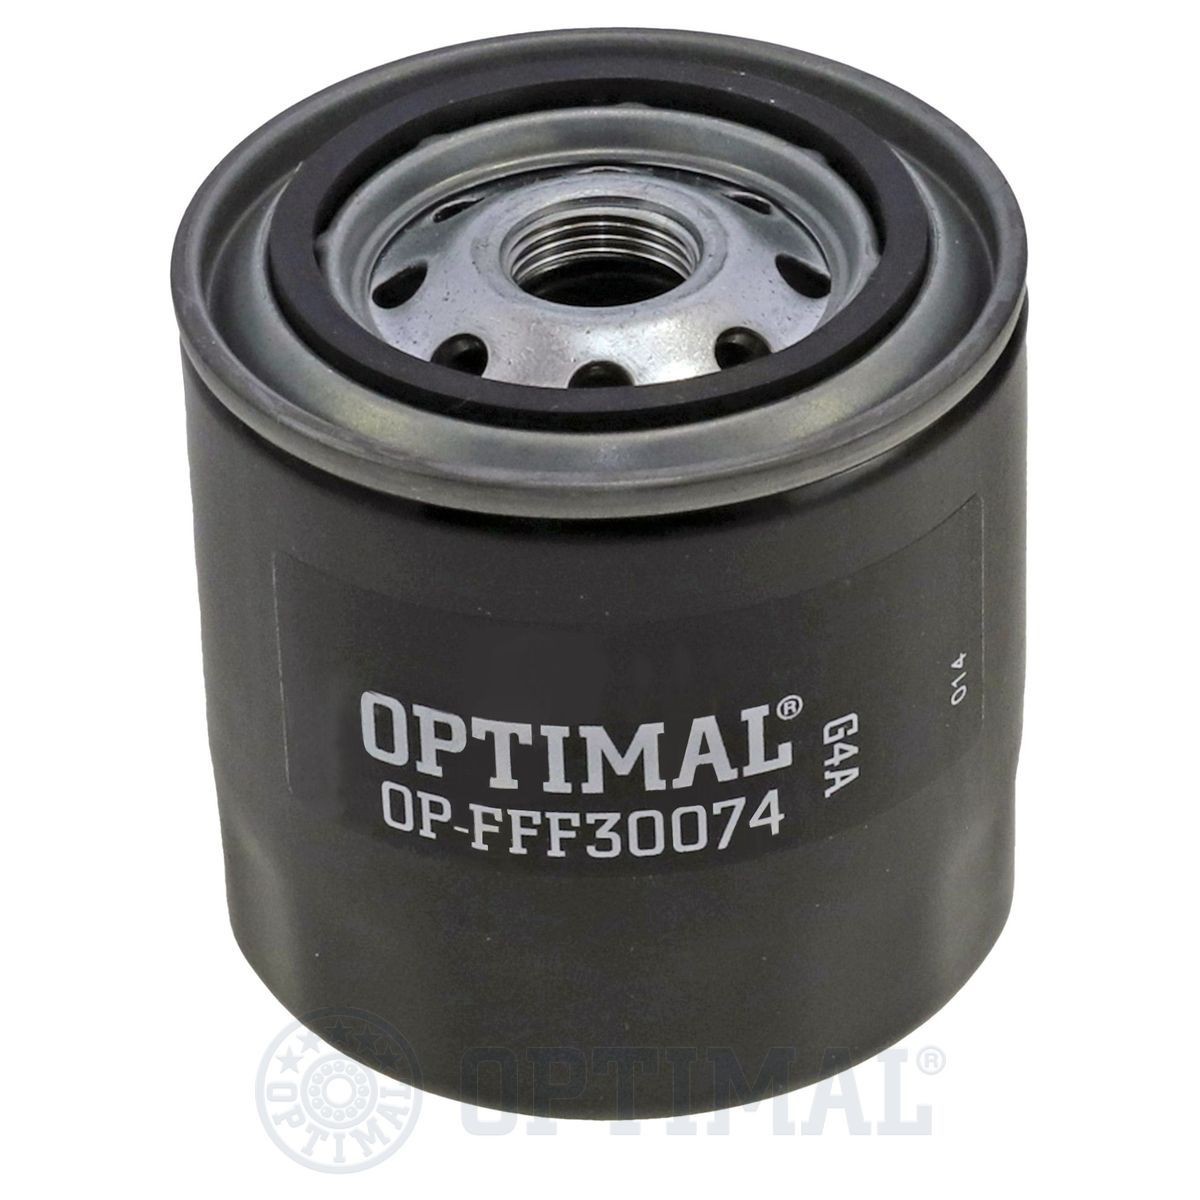 OPTIMAL OP-FFF30074 Fuel filter 4131078